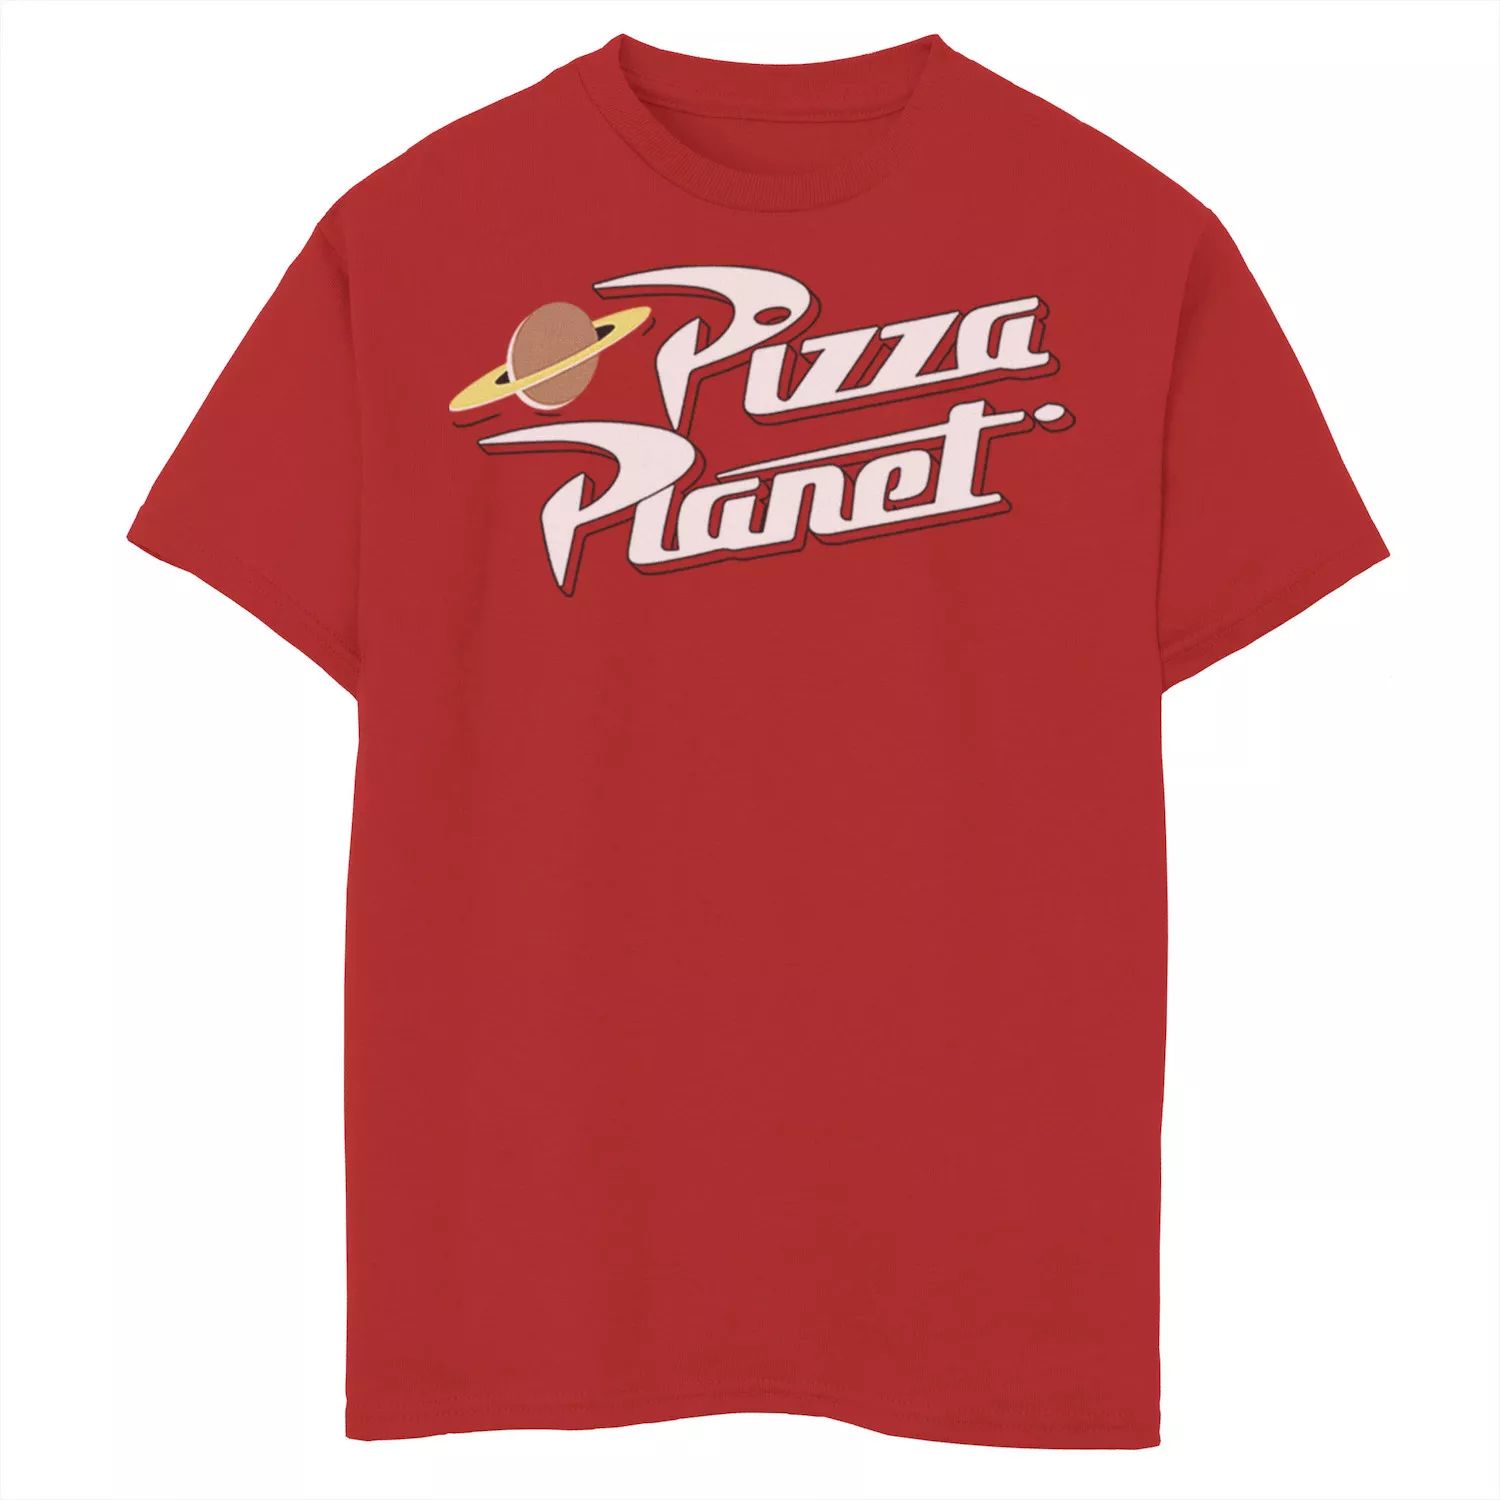 Футболка с логотипом Disney/Pixar «История игрушек» для мальчиков 8–20 лет Pizza Planet Disney / Pixar футболка с клетчатым логотипом disney pixar s toy story для мальчиков 8–20 лет pizza planet disney pixar